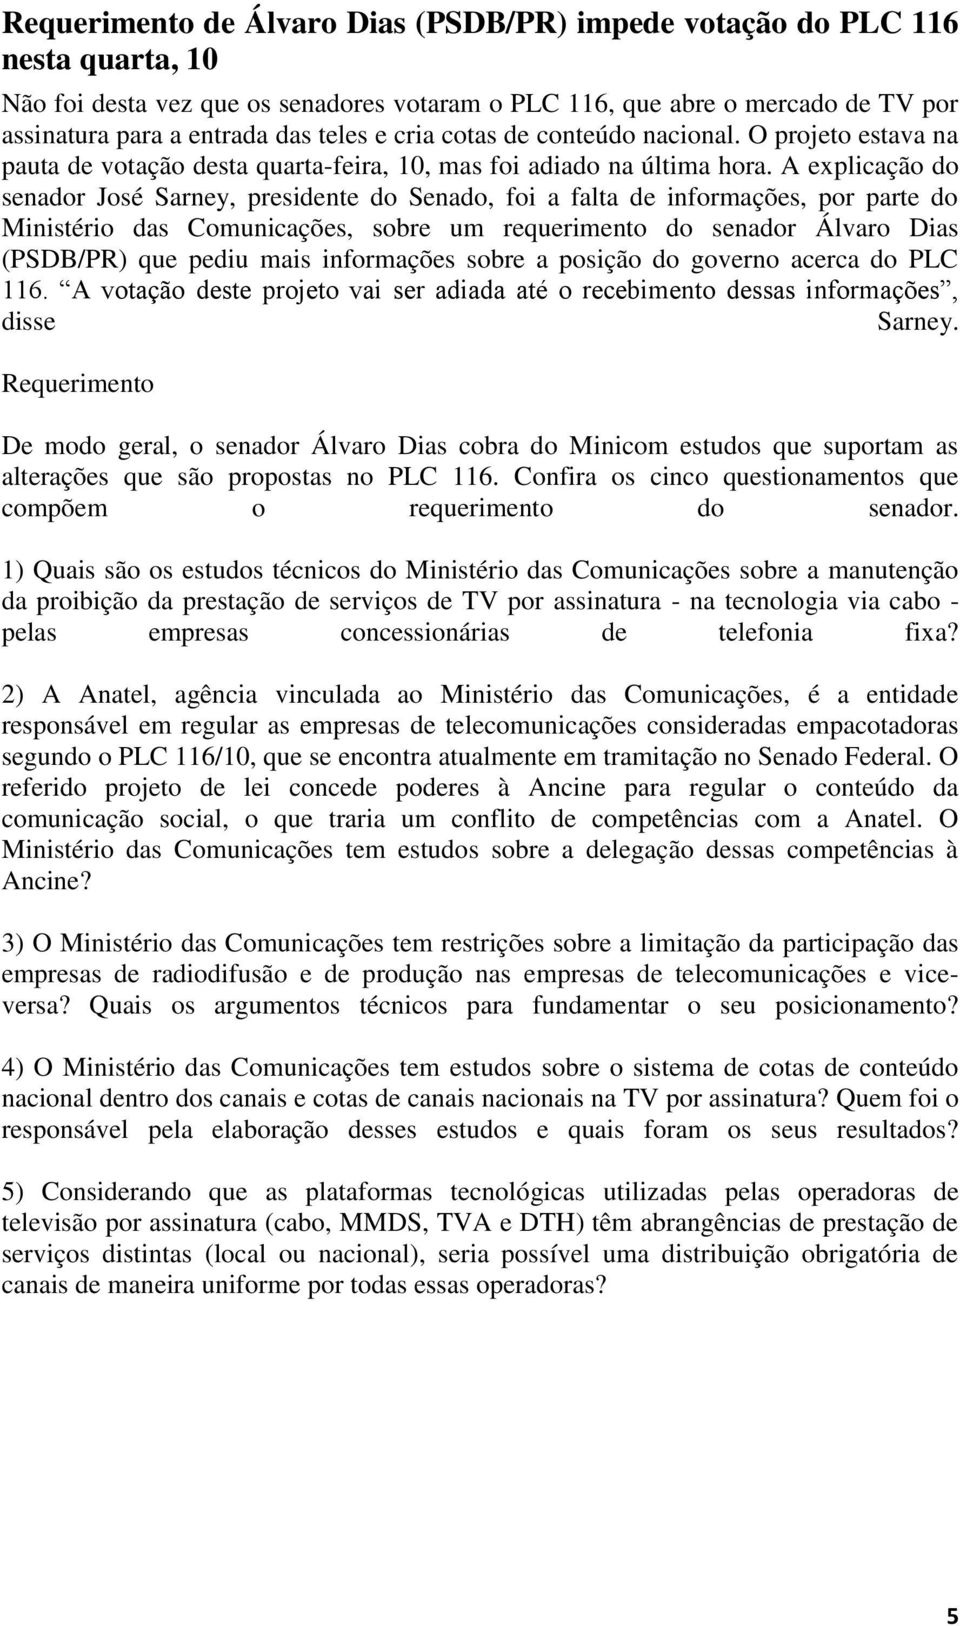 A explicação do senador José Sarney, presidente do Senado, foi a falta de informações, por parte do Ministério das Comunicações, sobre um requerimento do senador Álvaro Dias (PSDB/PR) que pediu mais